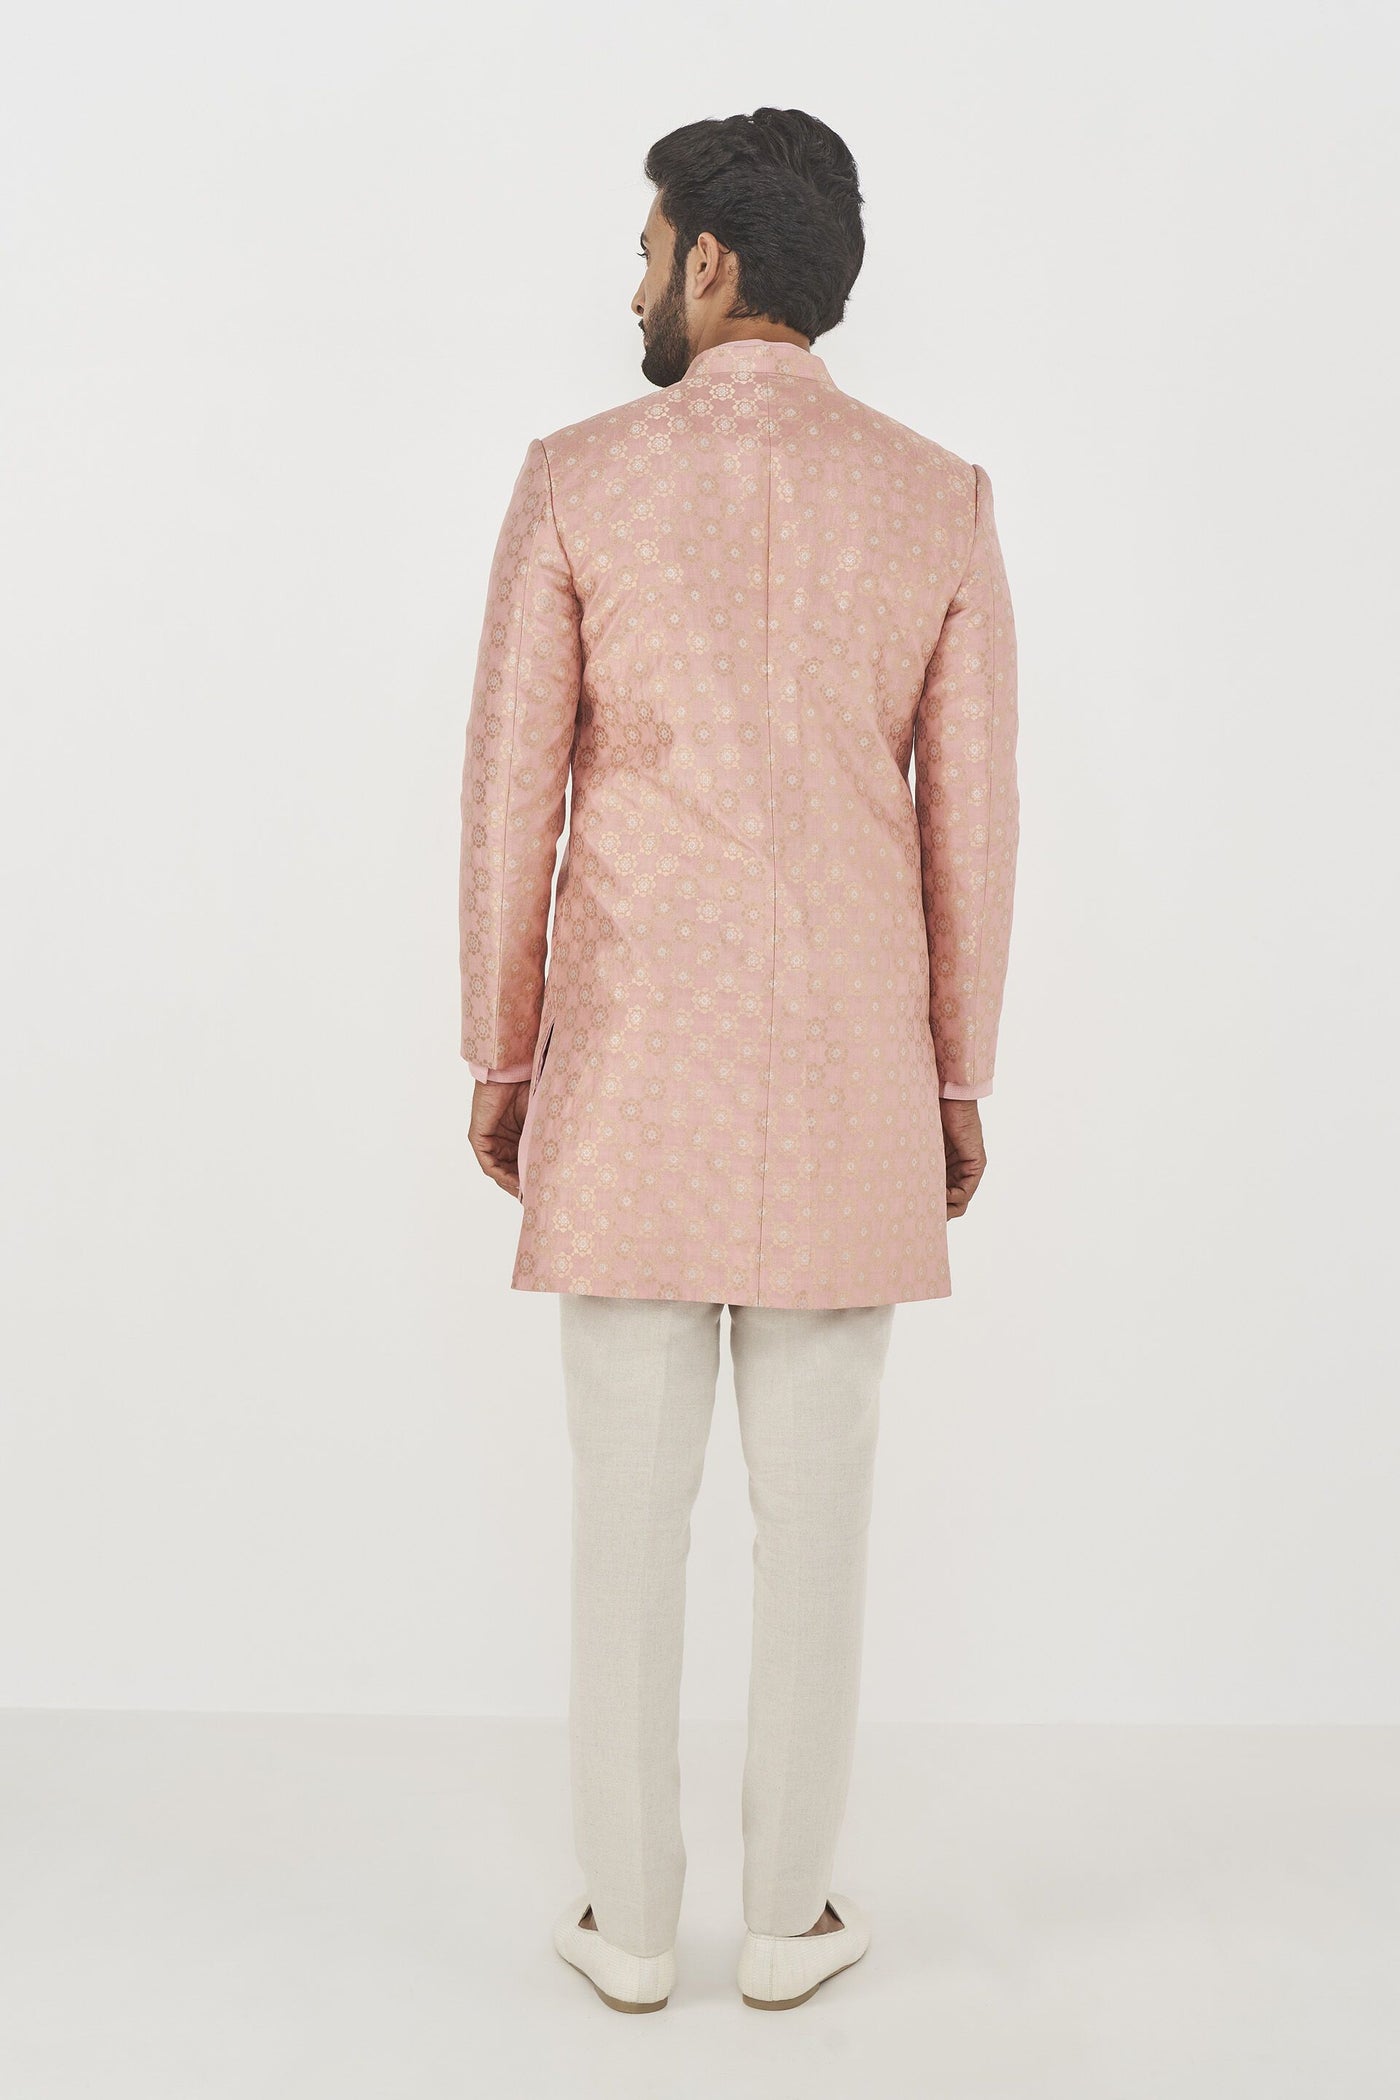 Anita Dongre menswear Jivin Sherwani Pink indian designer wear online shopping melange singapore